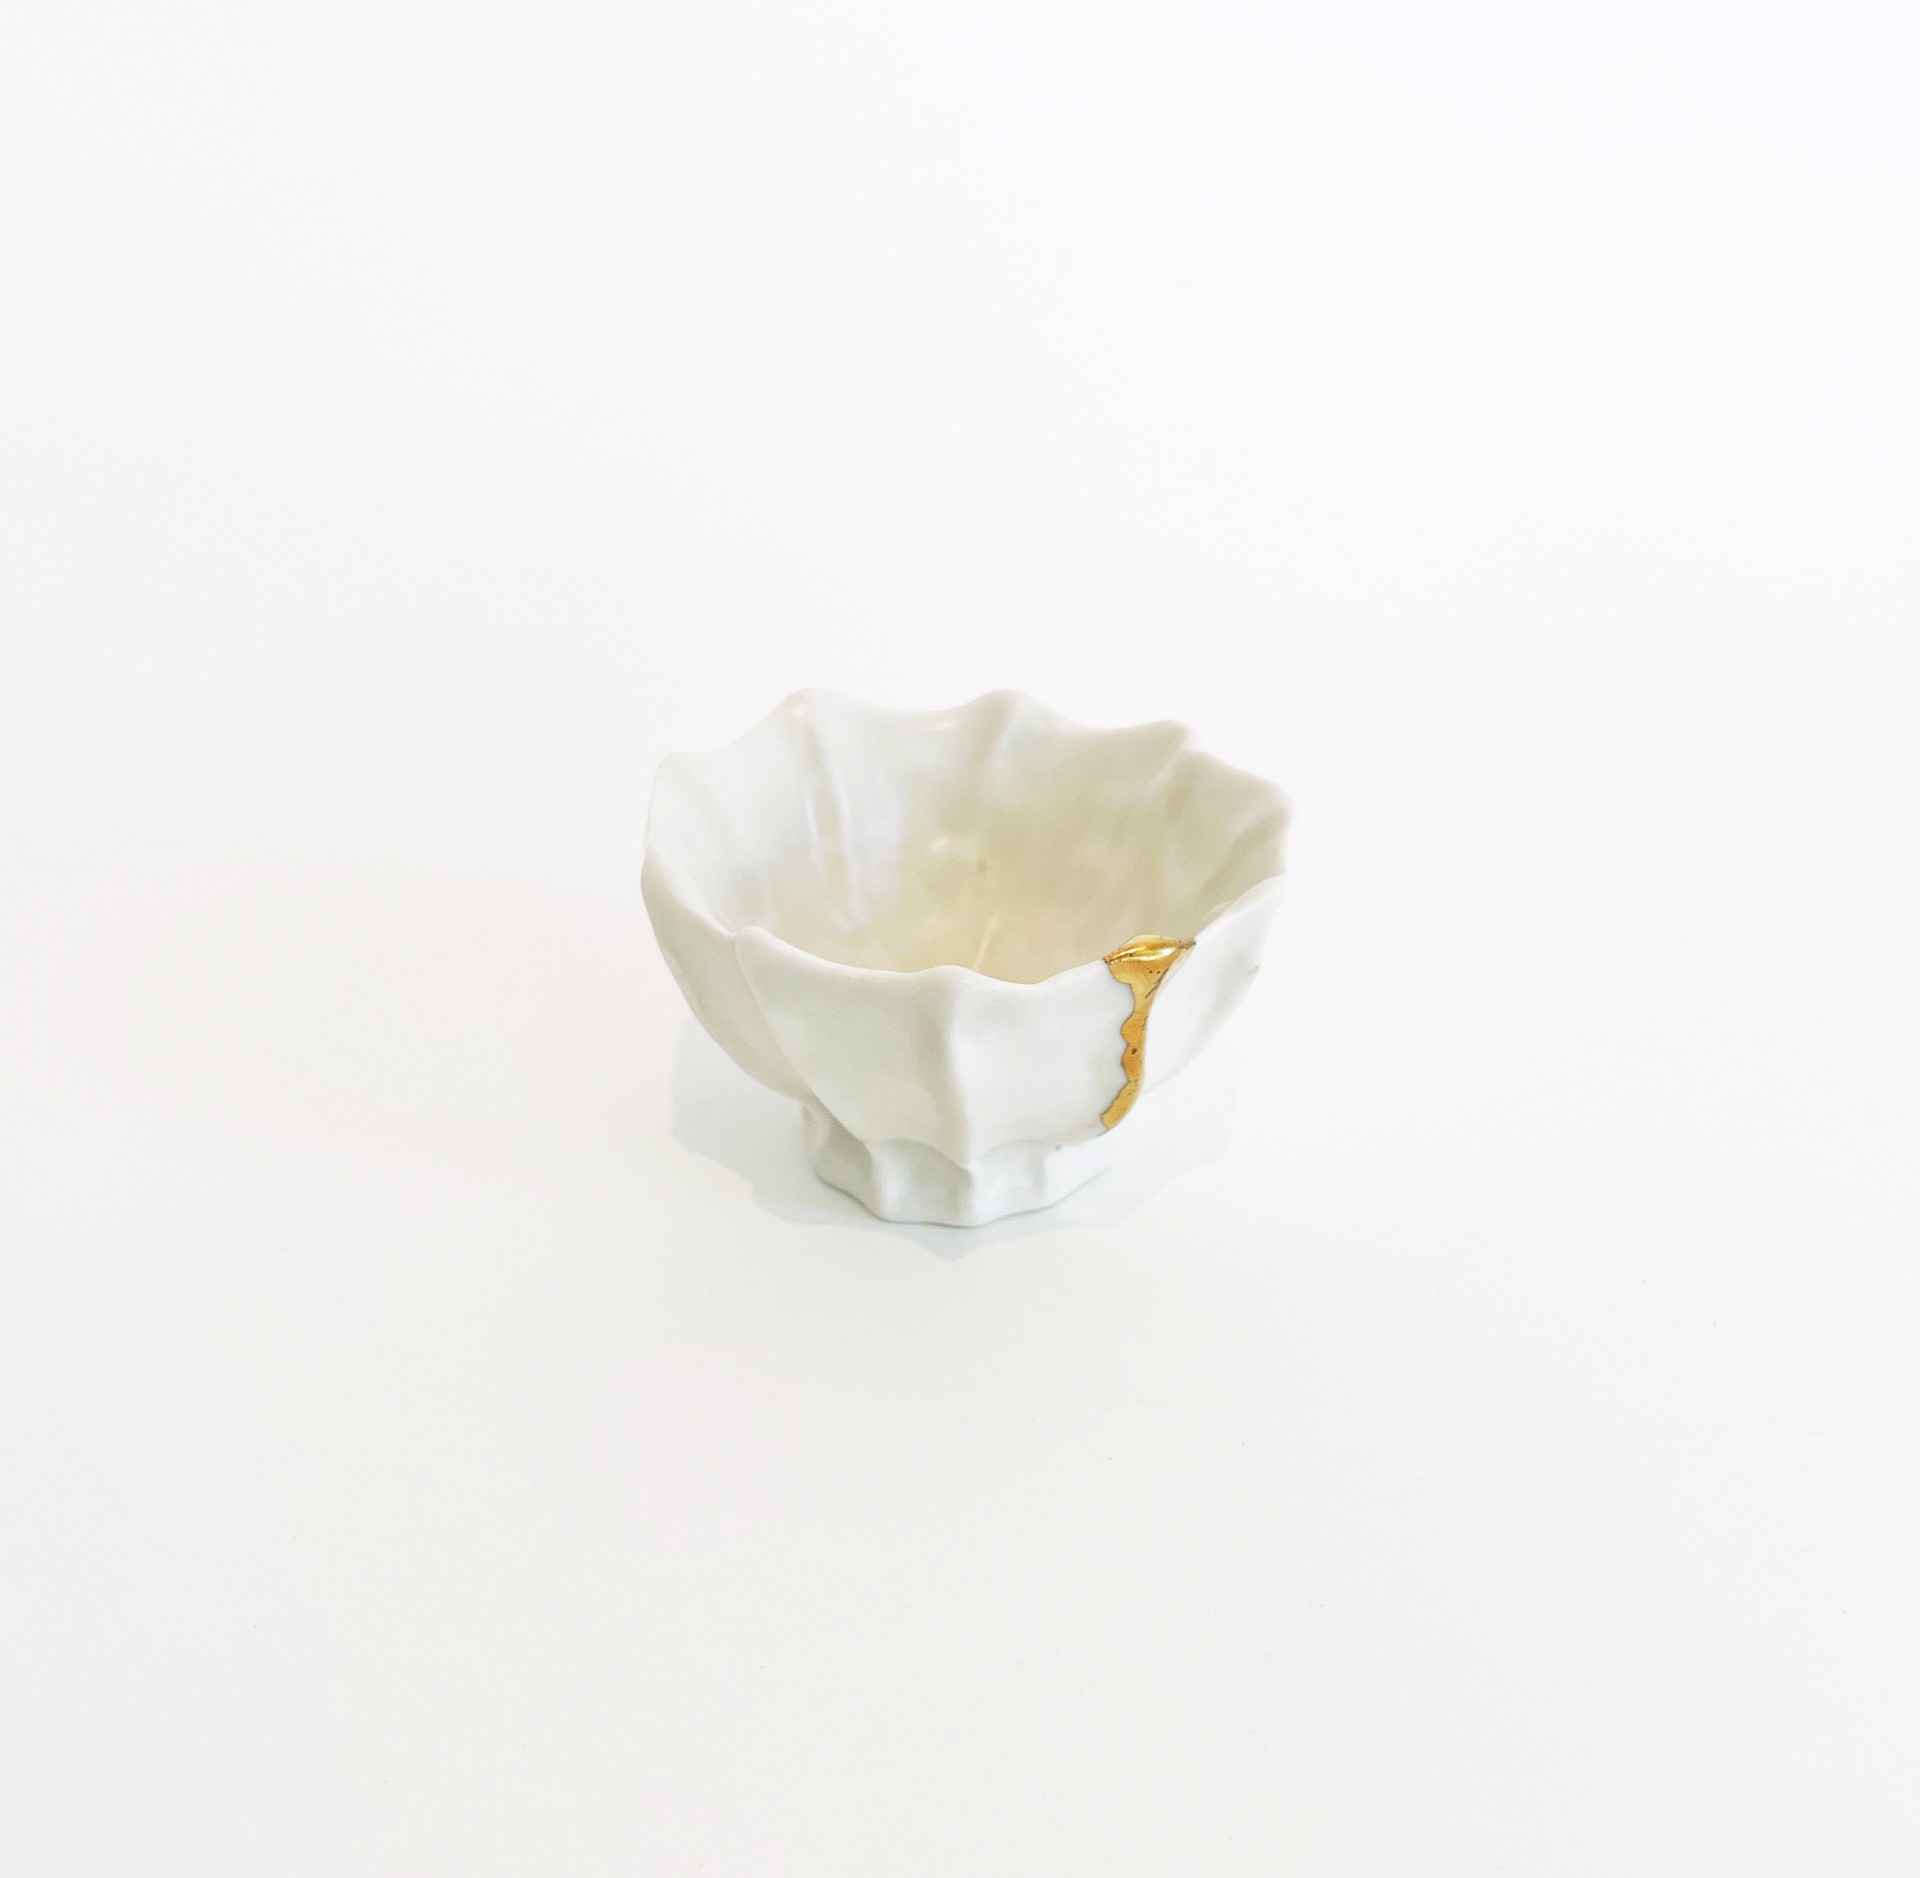 Pinch Pot Lustre Glaze by Bean Finneran